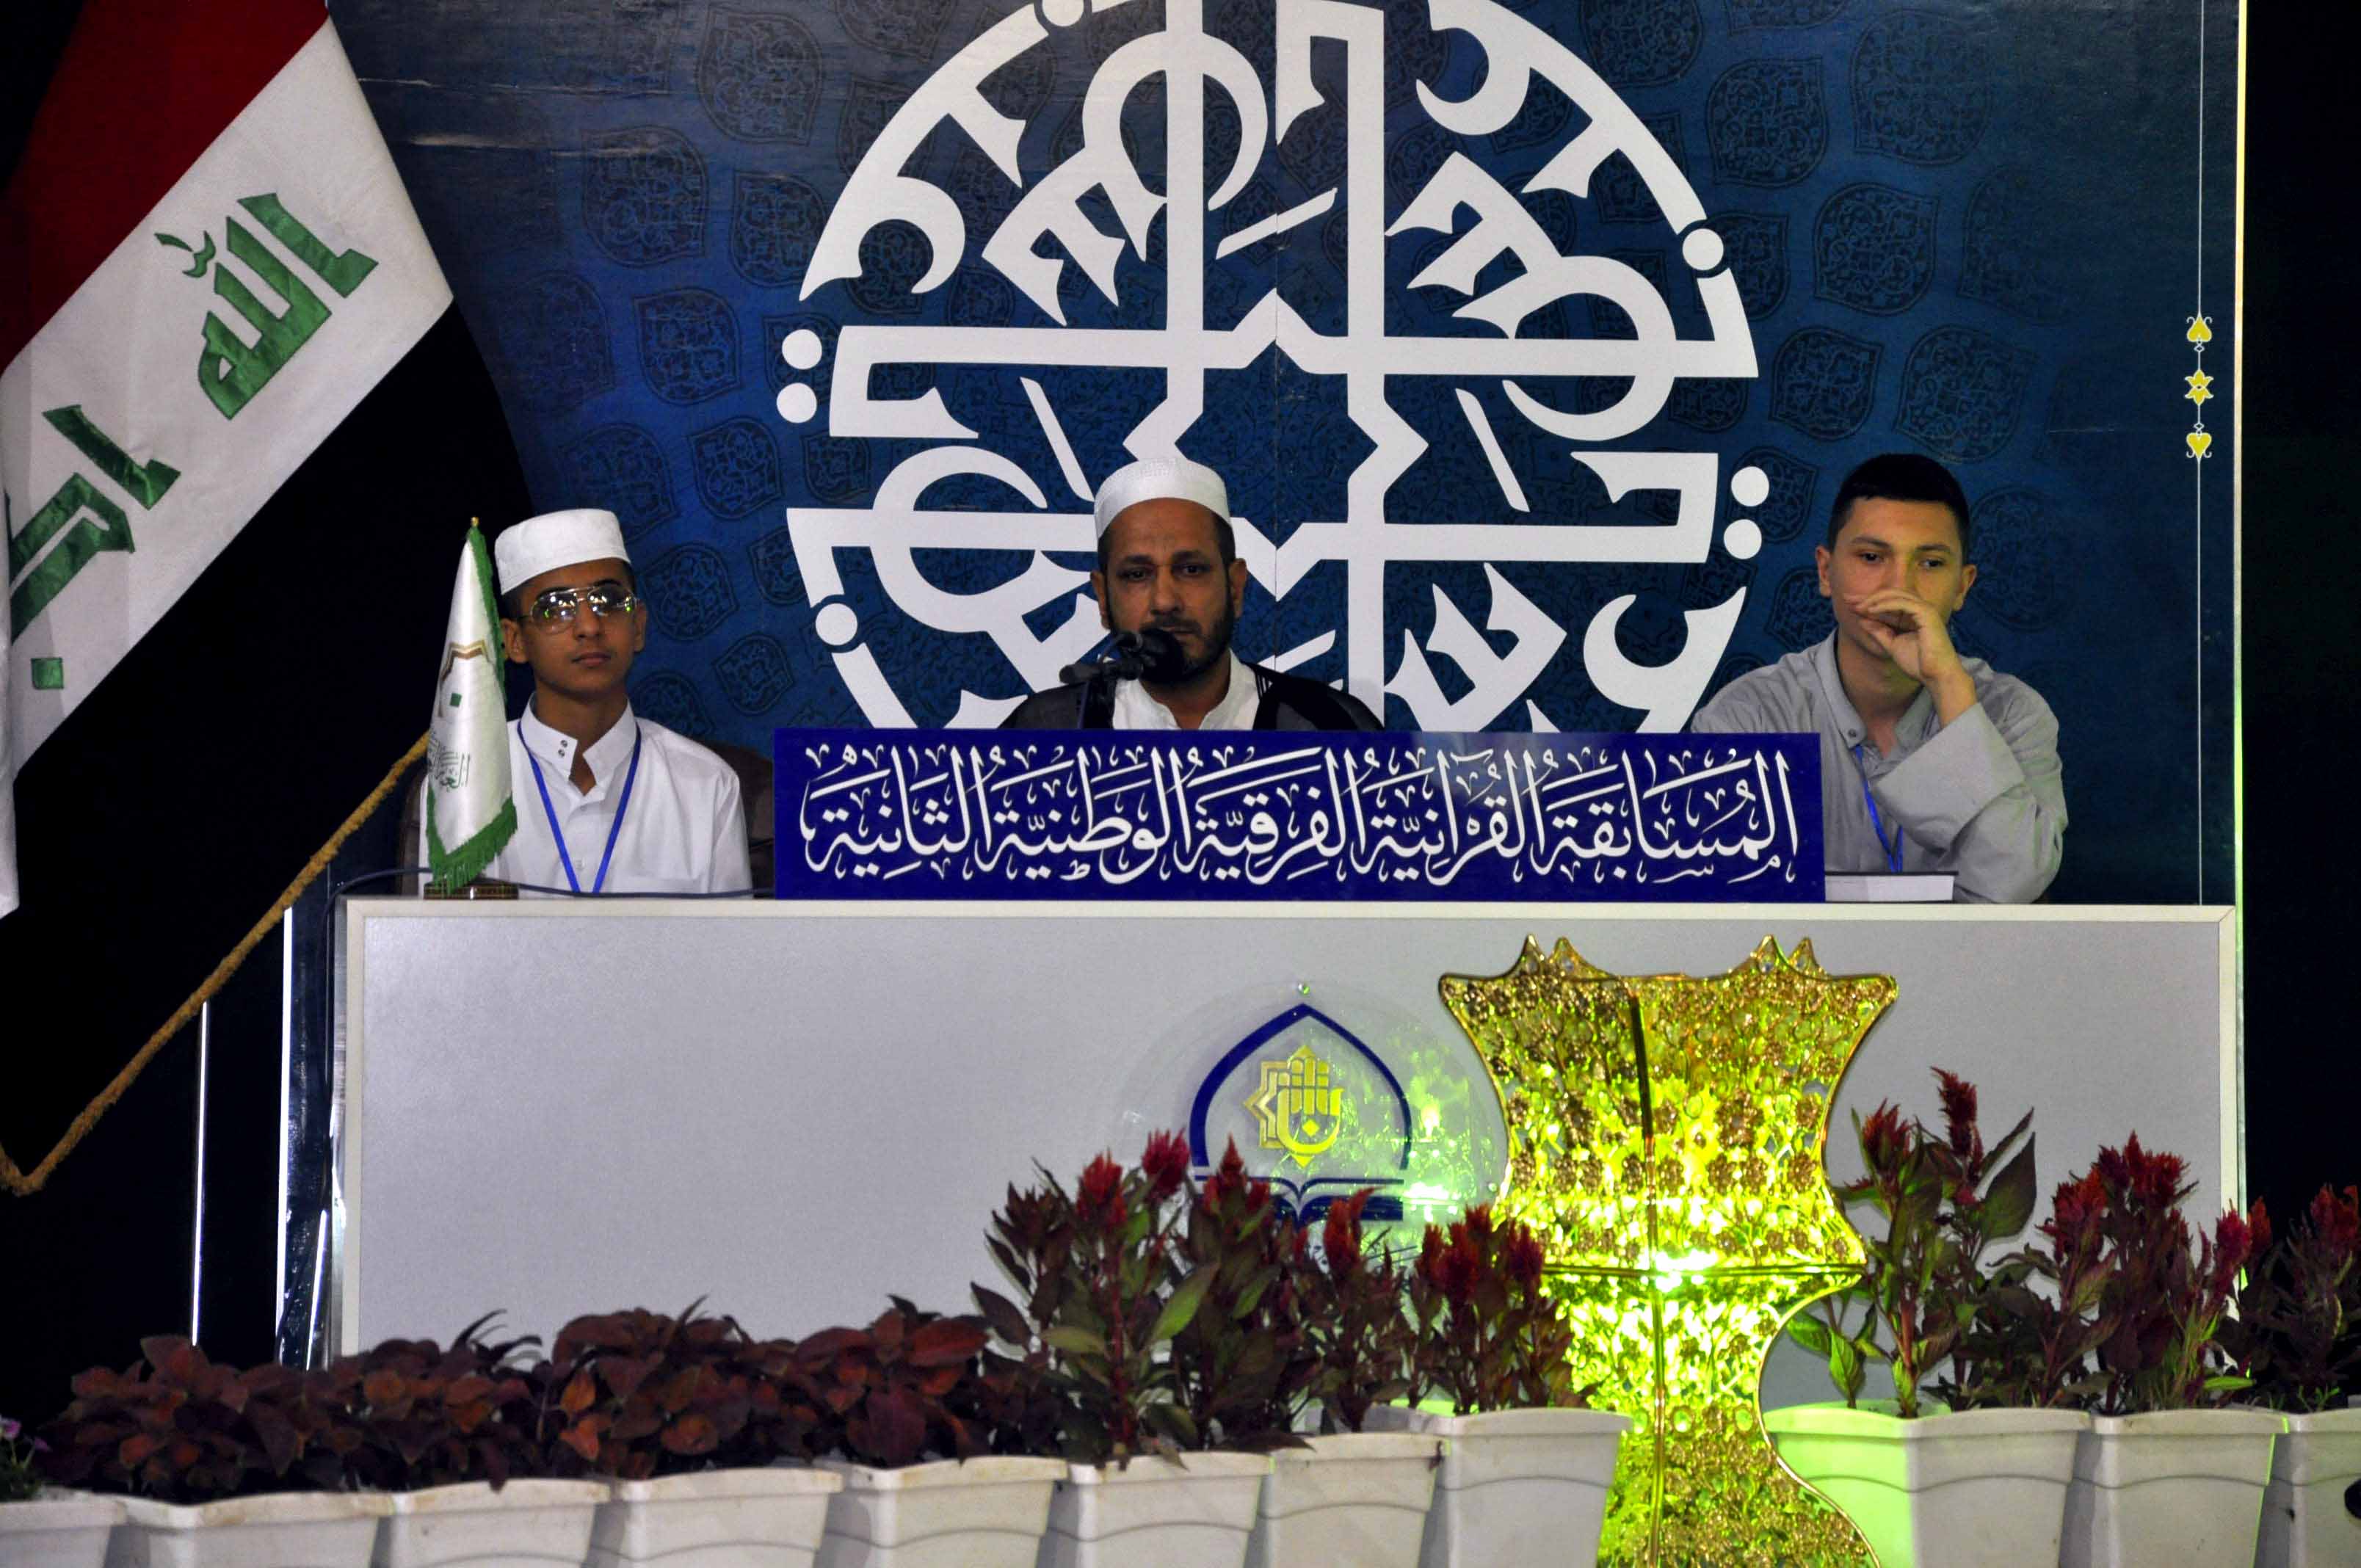 انطلاق المرحلة الثانية من المسابقة القرآنية الفرقية الوطنية الثانية بمشاركة (16) فريقاً اجتازوا المرحلة الأولى